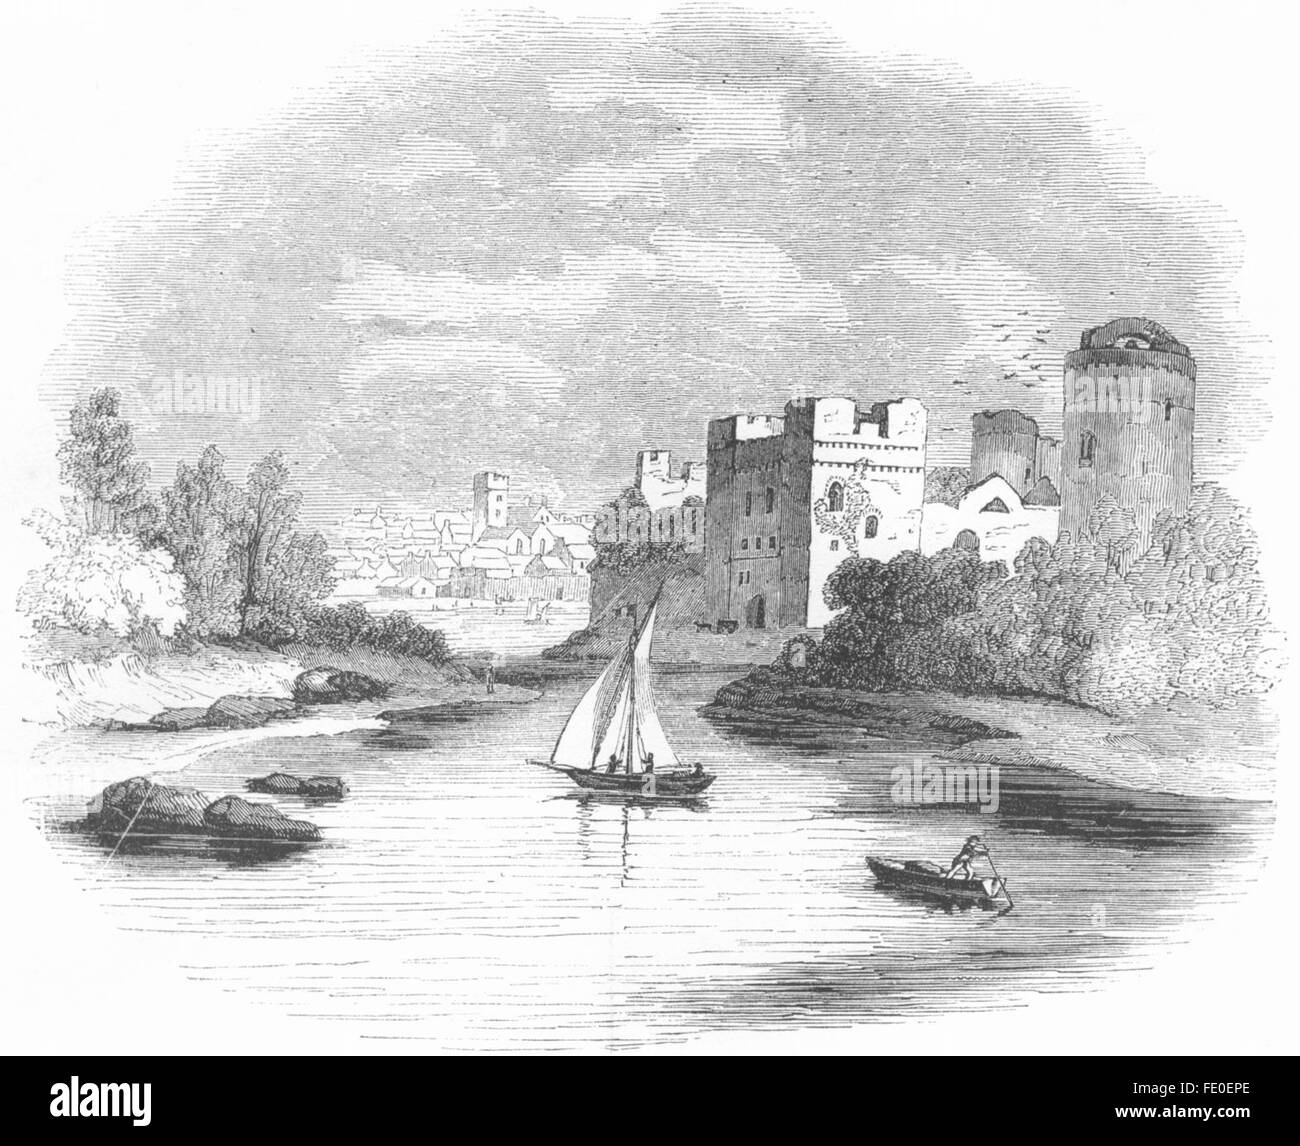 WALES: Pembroke Castle, antique print 1845 Stock Photo